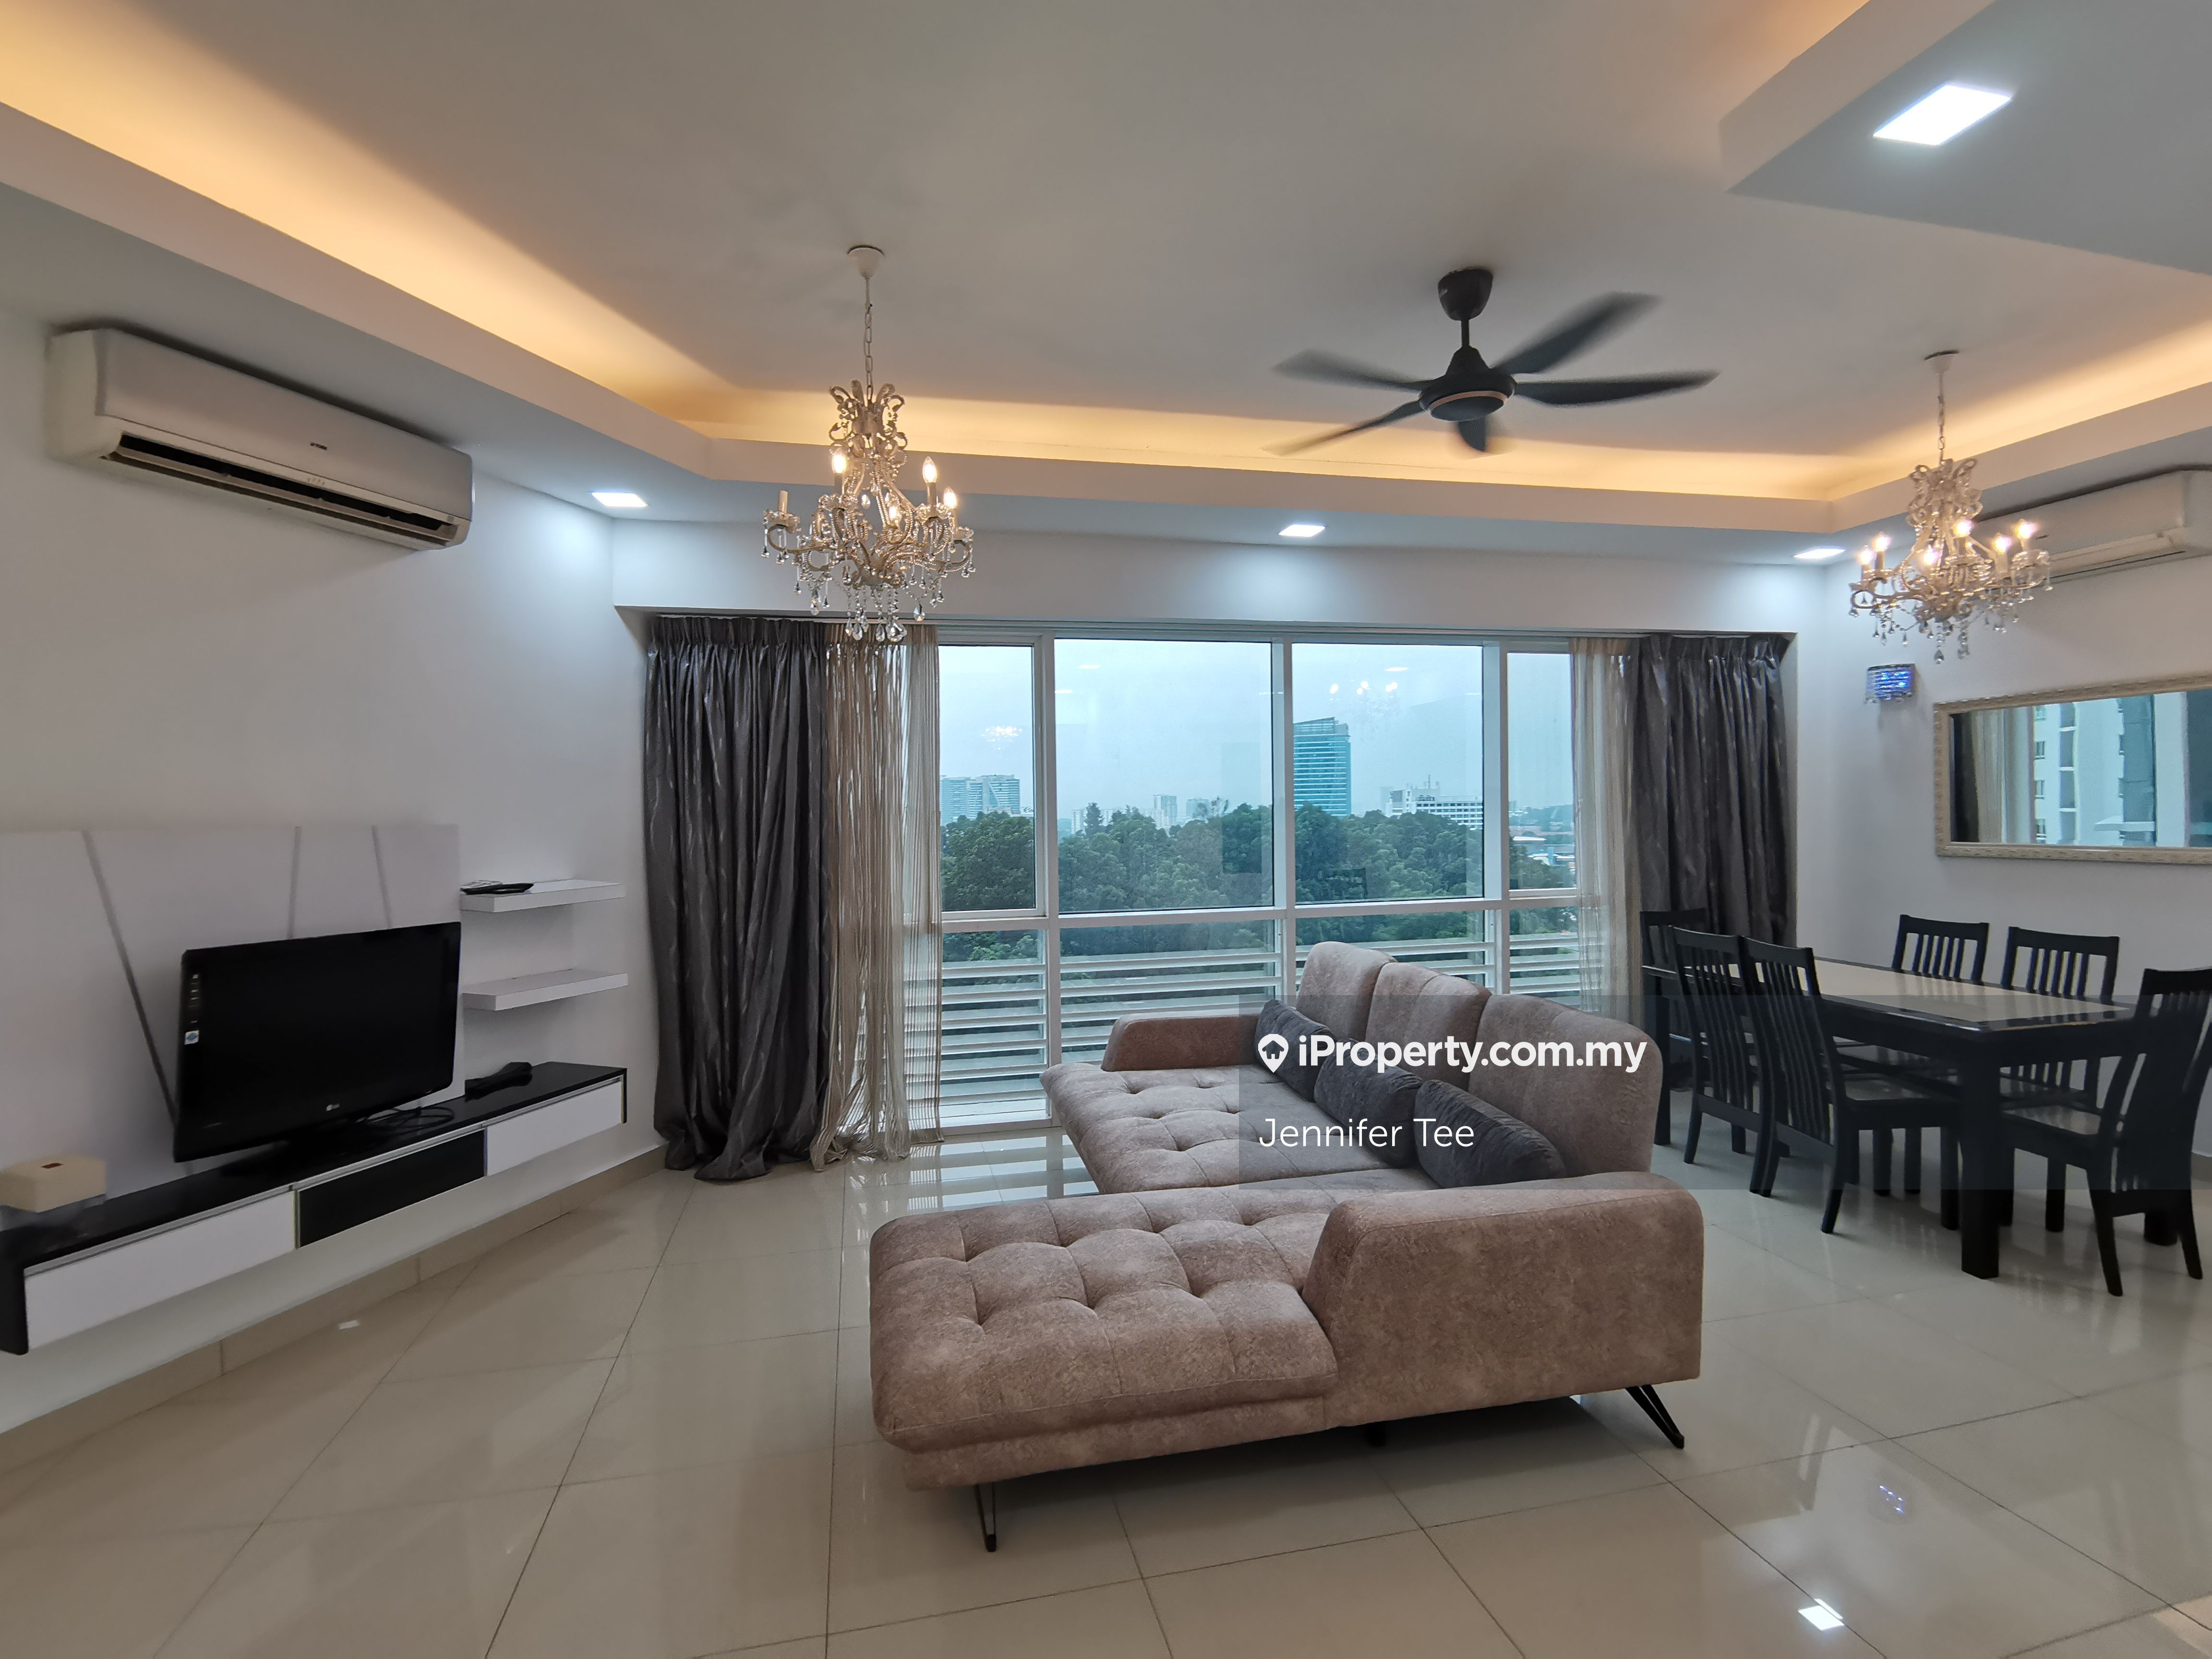 Surian Residences Condominium 5 bedrooms for rent in Mutiara Damansara ...